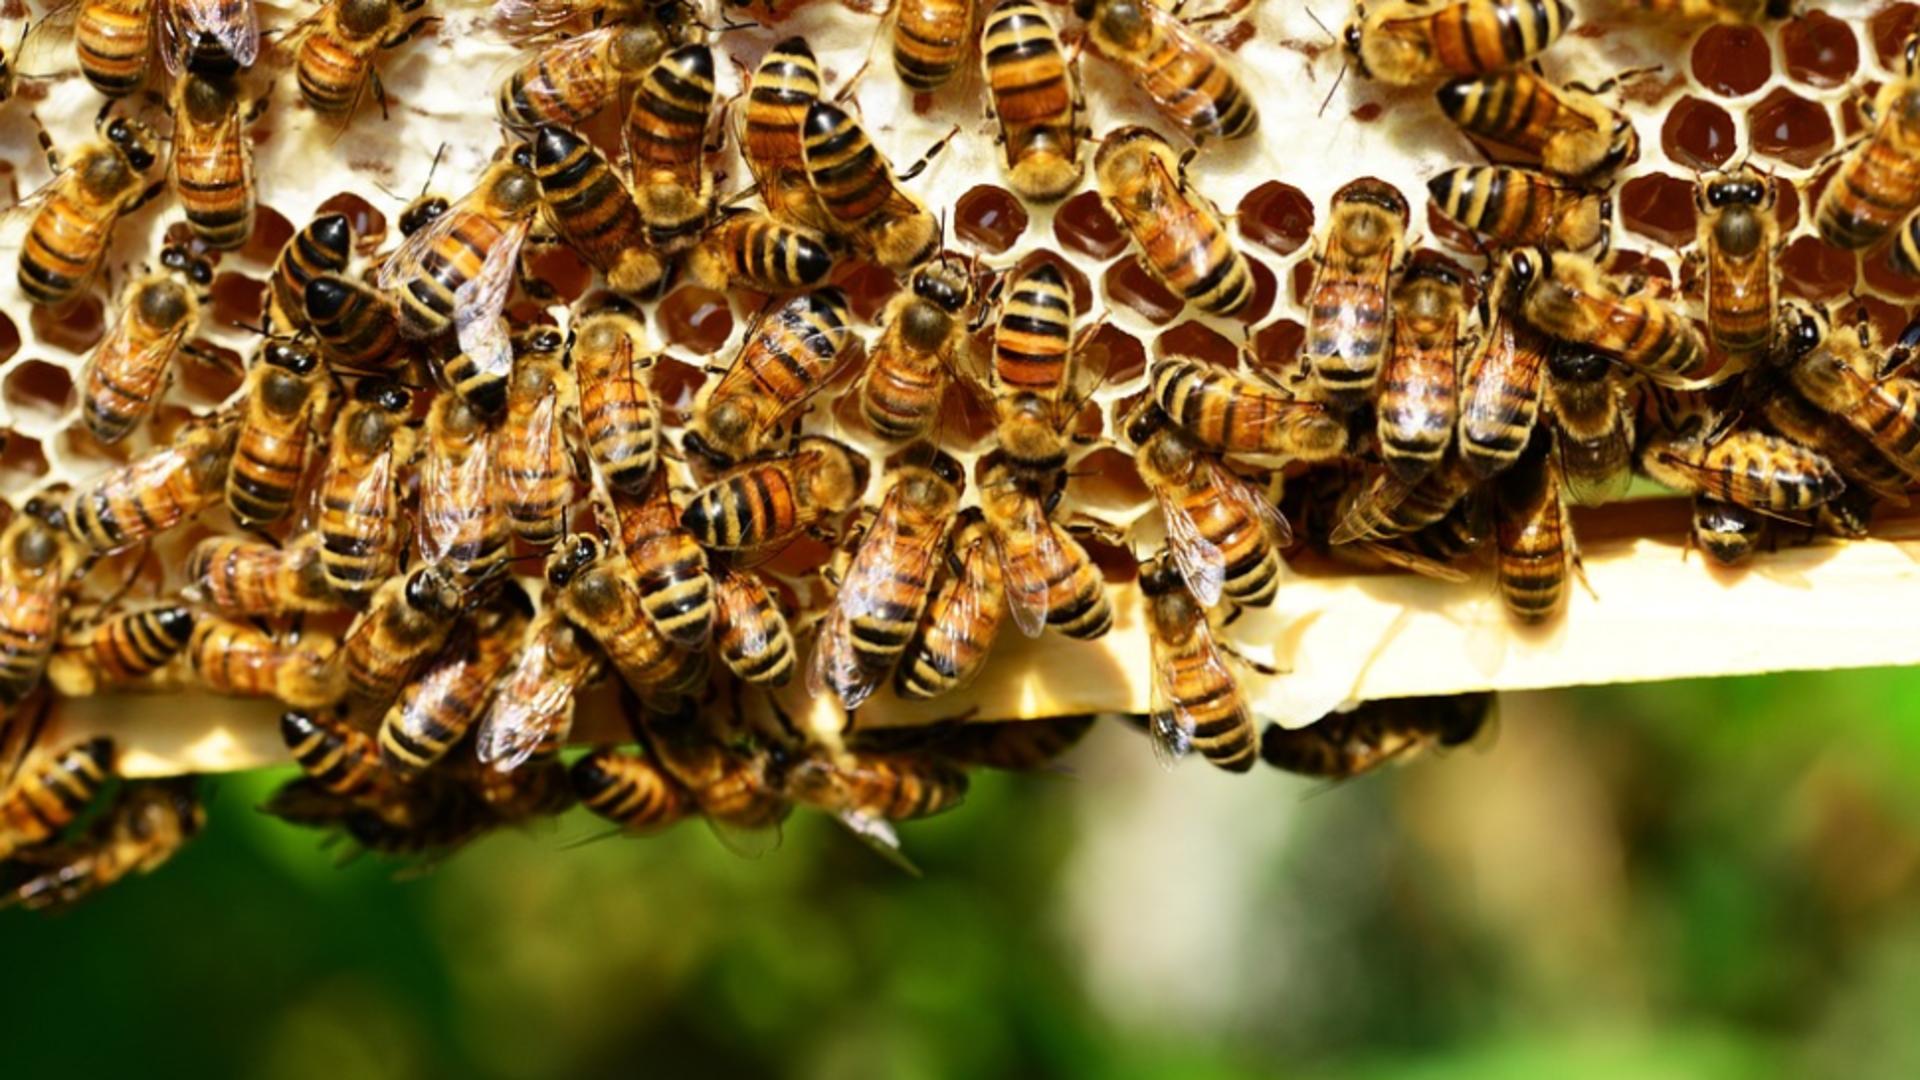 Inspirați de mâncarea din insecte, apicultorii români se gândesc să producă făină din puiet de trântor